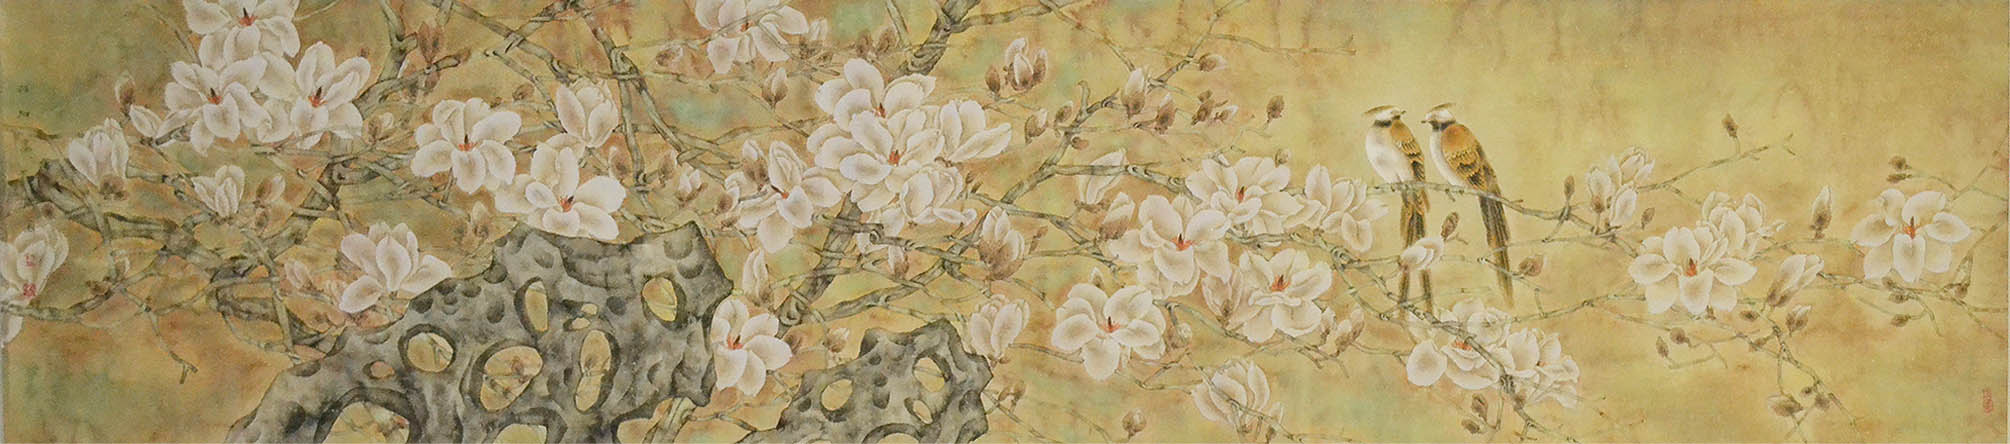 师行坤国画1692